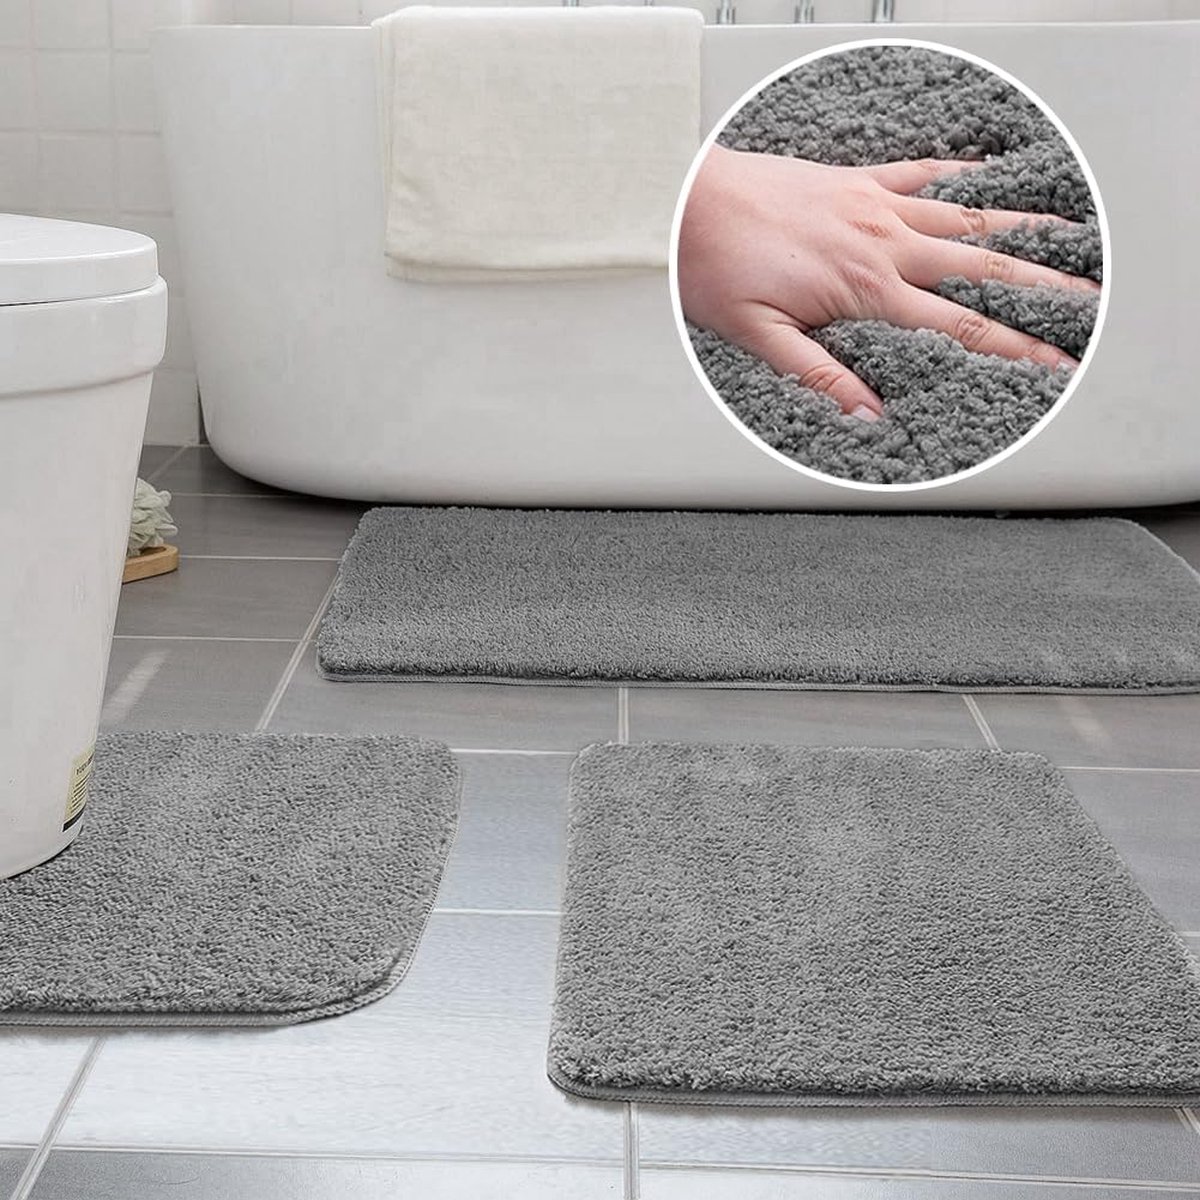 Badmattensets 3 stuks antislip microvezelbadmatten wasbaar 40 x 50 cm U-vormige toiletmat, 50 x 60 cm kleine badmat, 50 x 80 cm badmat (grijs)